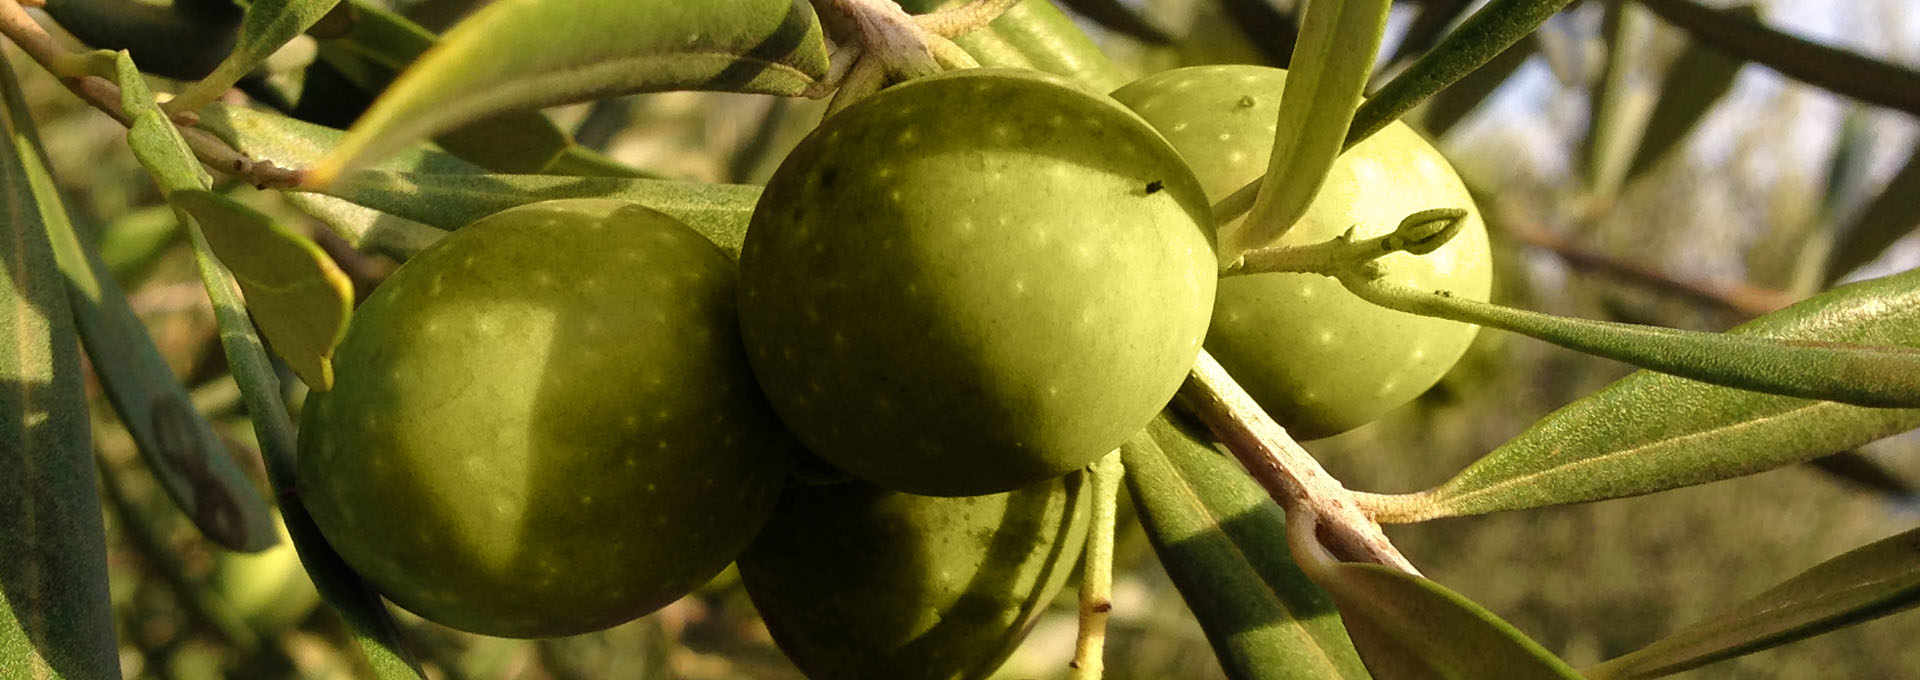 The Itrana Olive